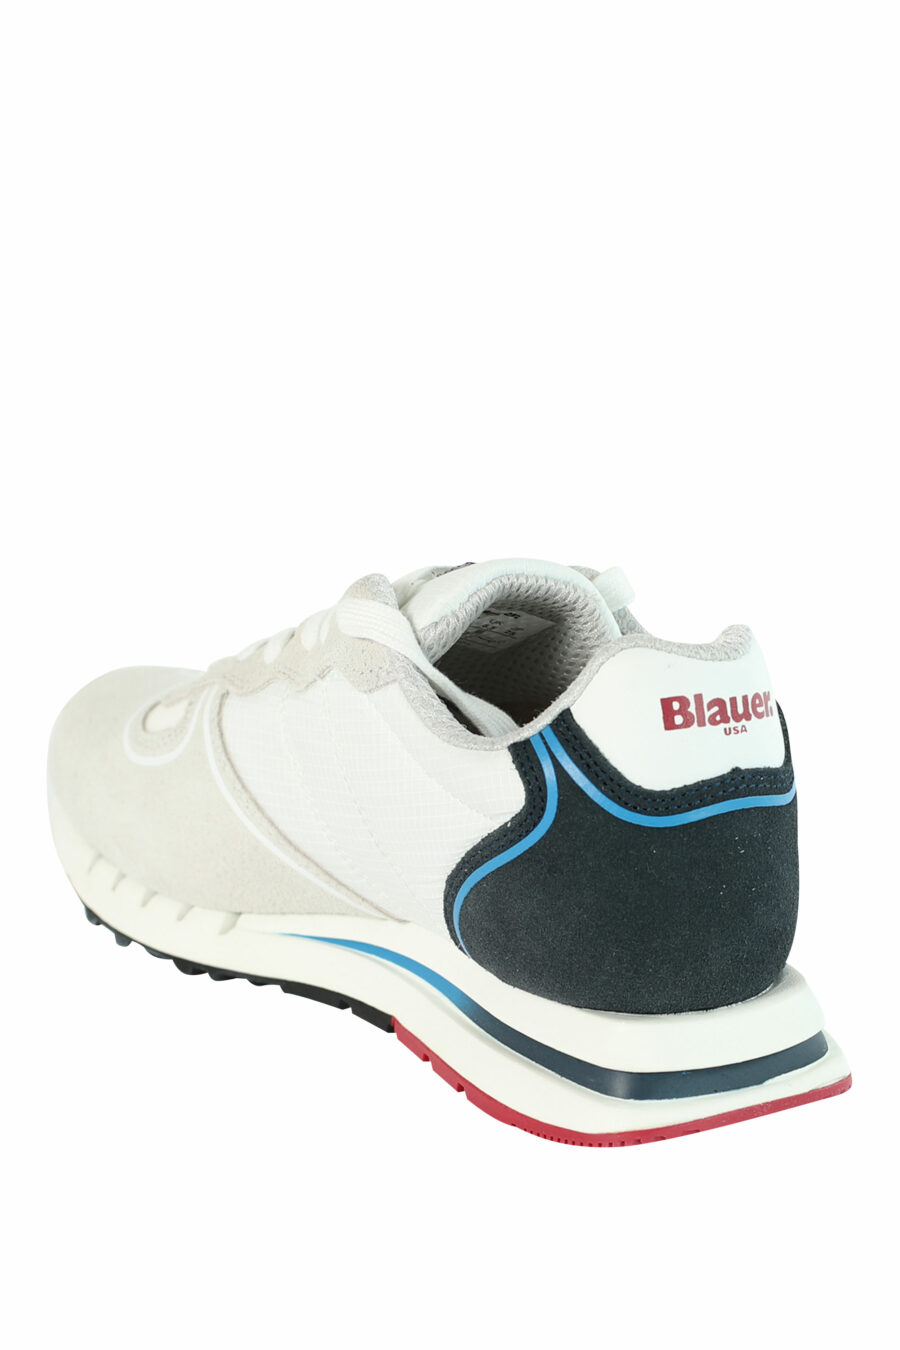 Zapatillas "QUARTZ" blancas con azul y detalles rojos - 8058156499522 4